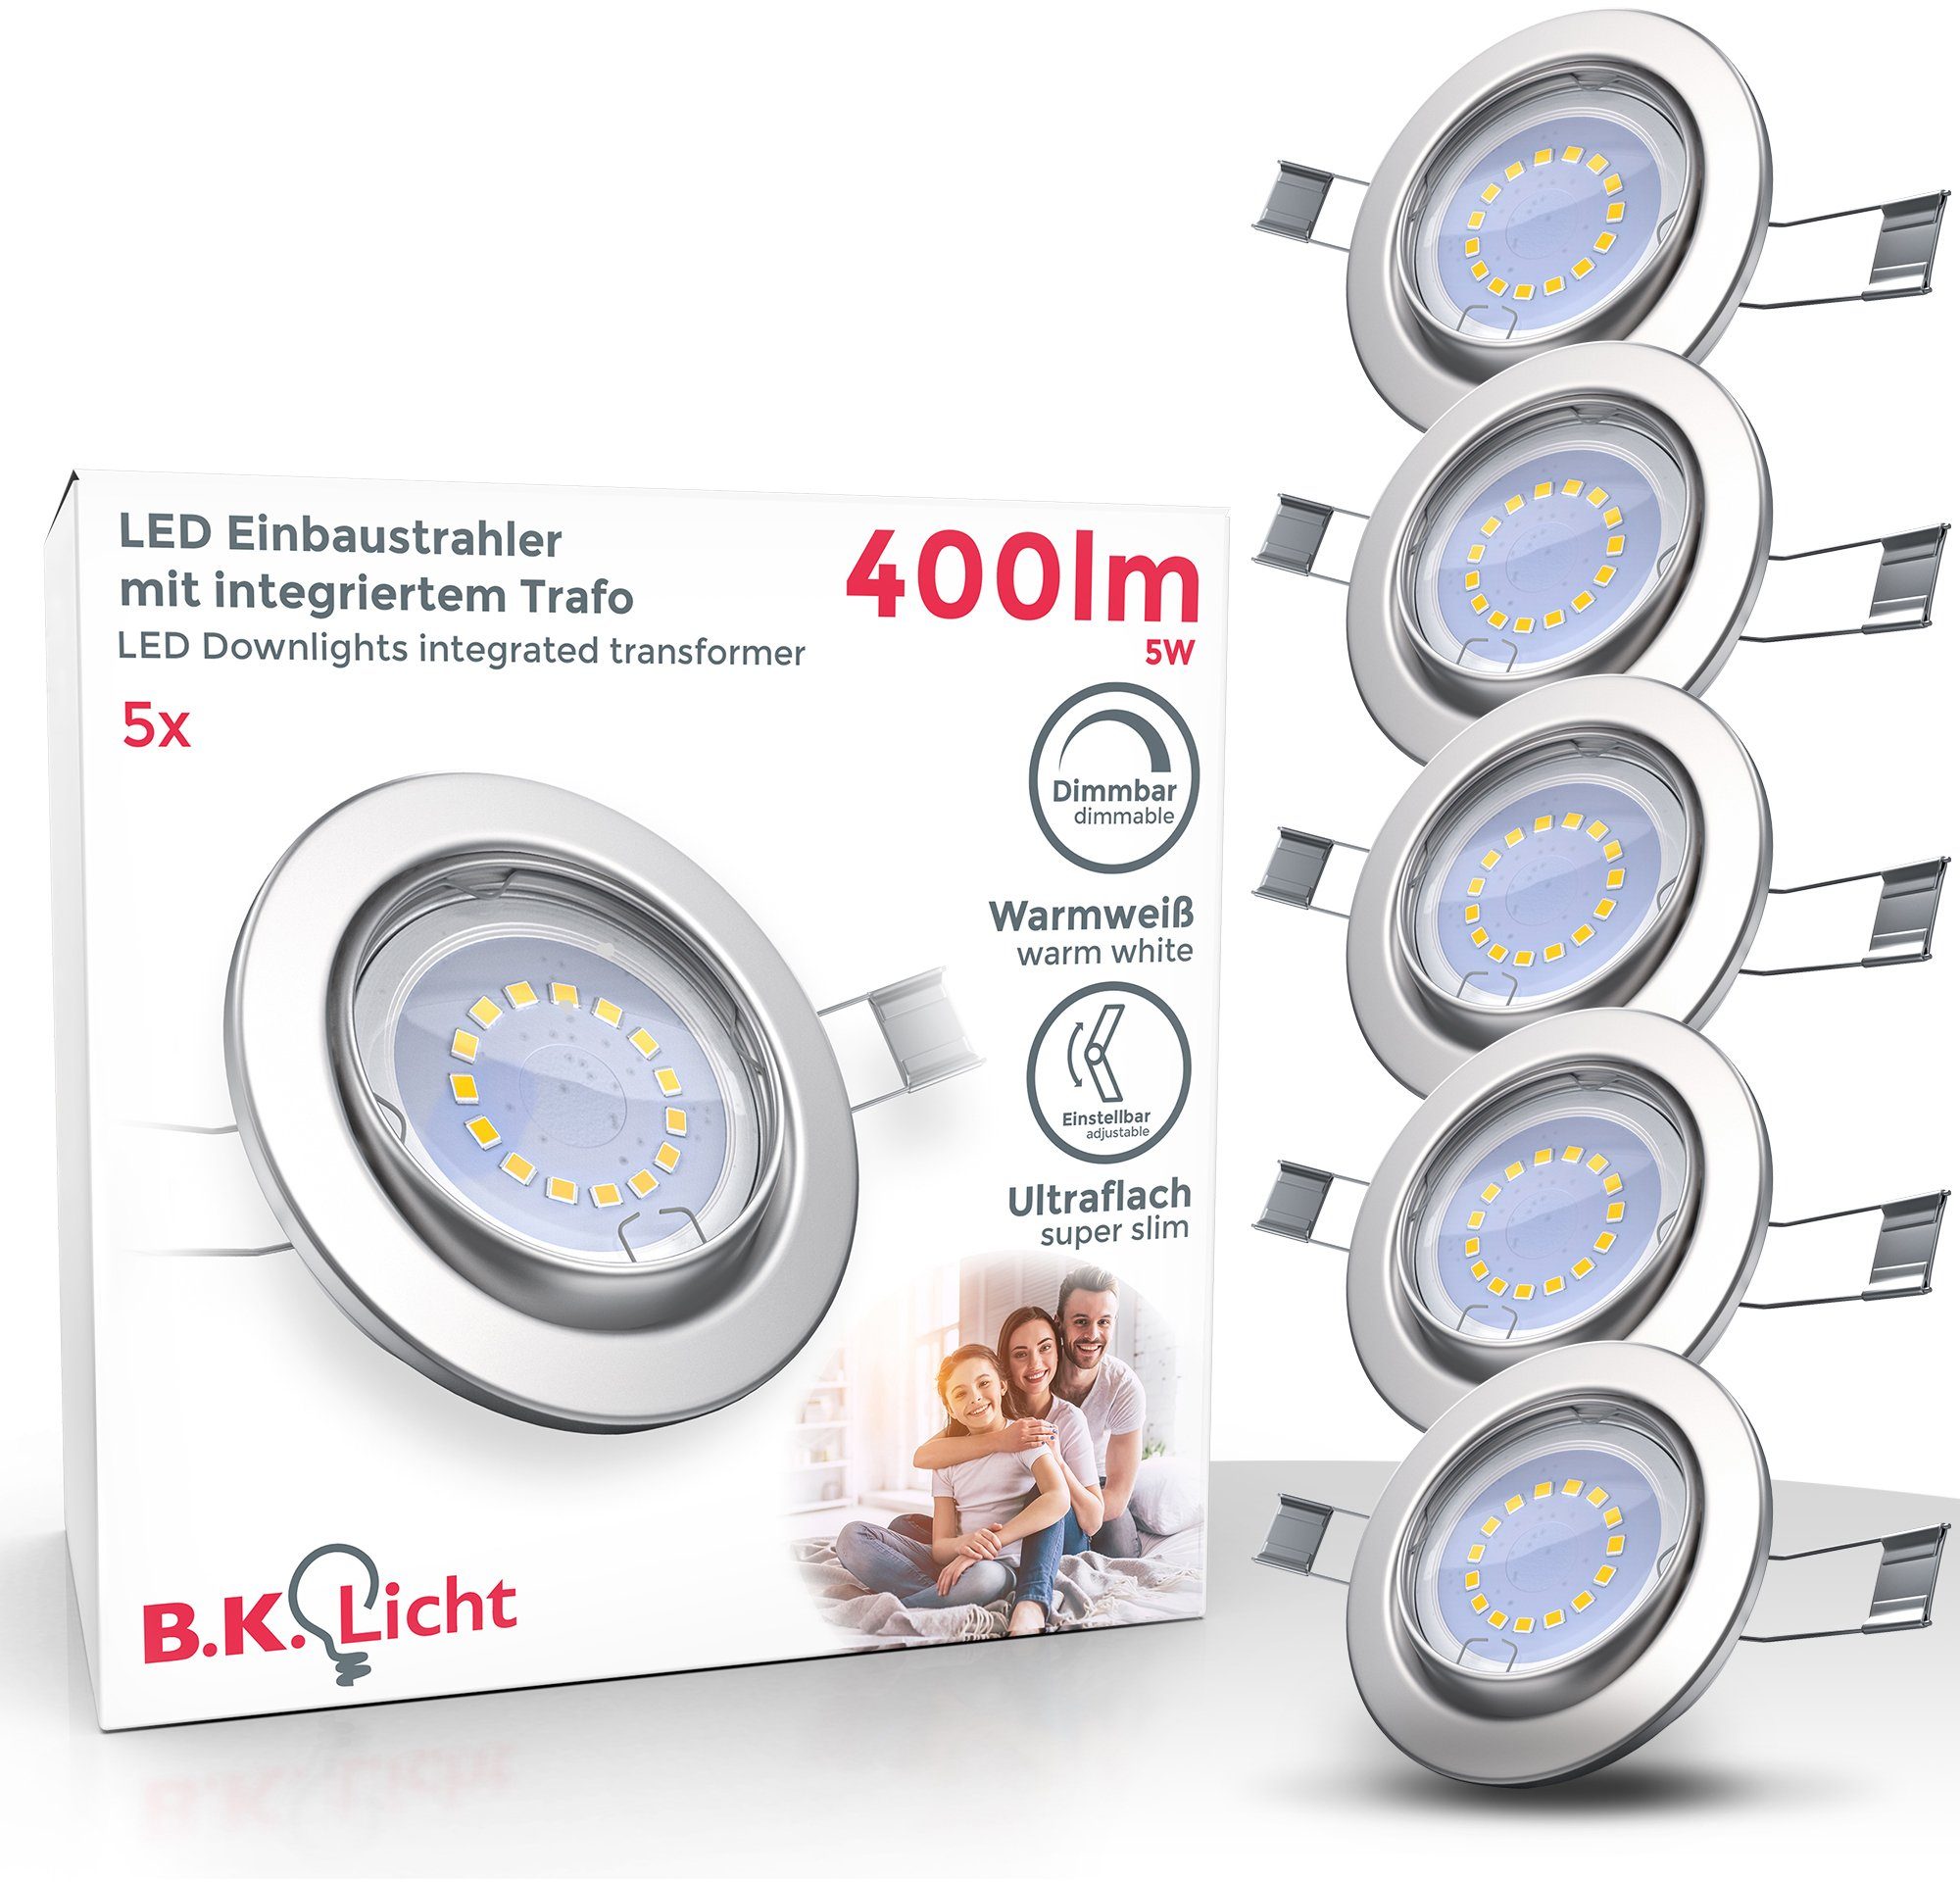 B.K.Licht LED Einbaustrahler BKL1075, Leuchtmittel wechselbar, Warmweiß,  5er Set dimmbare LED Einbauleuchten, schwenkbar, inkl. 5x 5W GU10 400 Lumen  Leuchtmittel, 3.000K warmweißes Licht, IP23, Einbauspots, Deckenstrahler  Nickel-matt